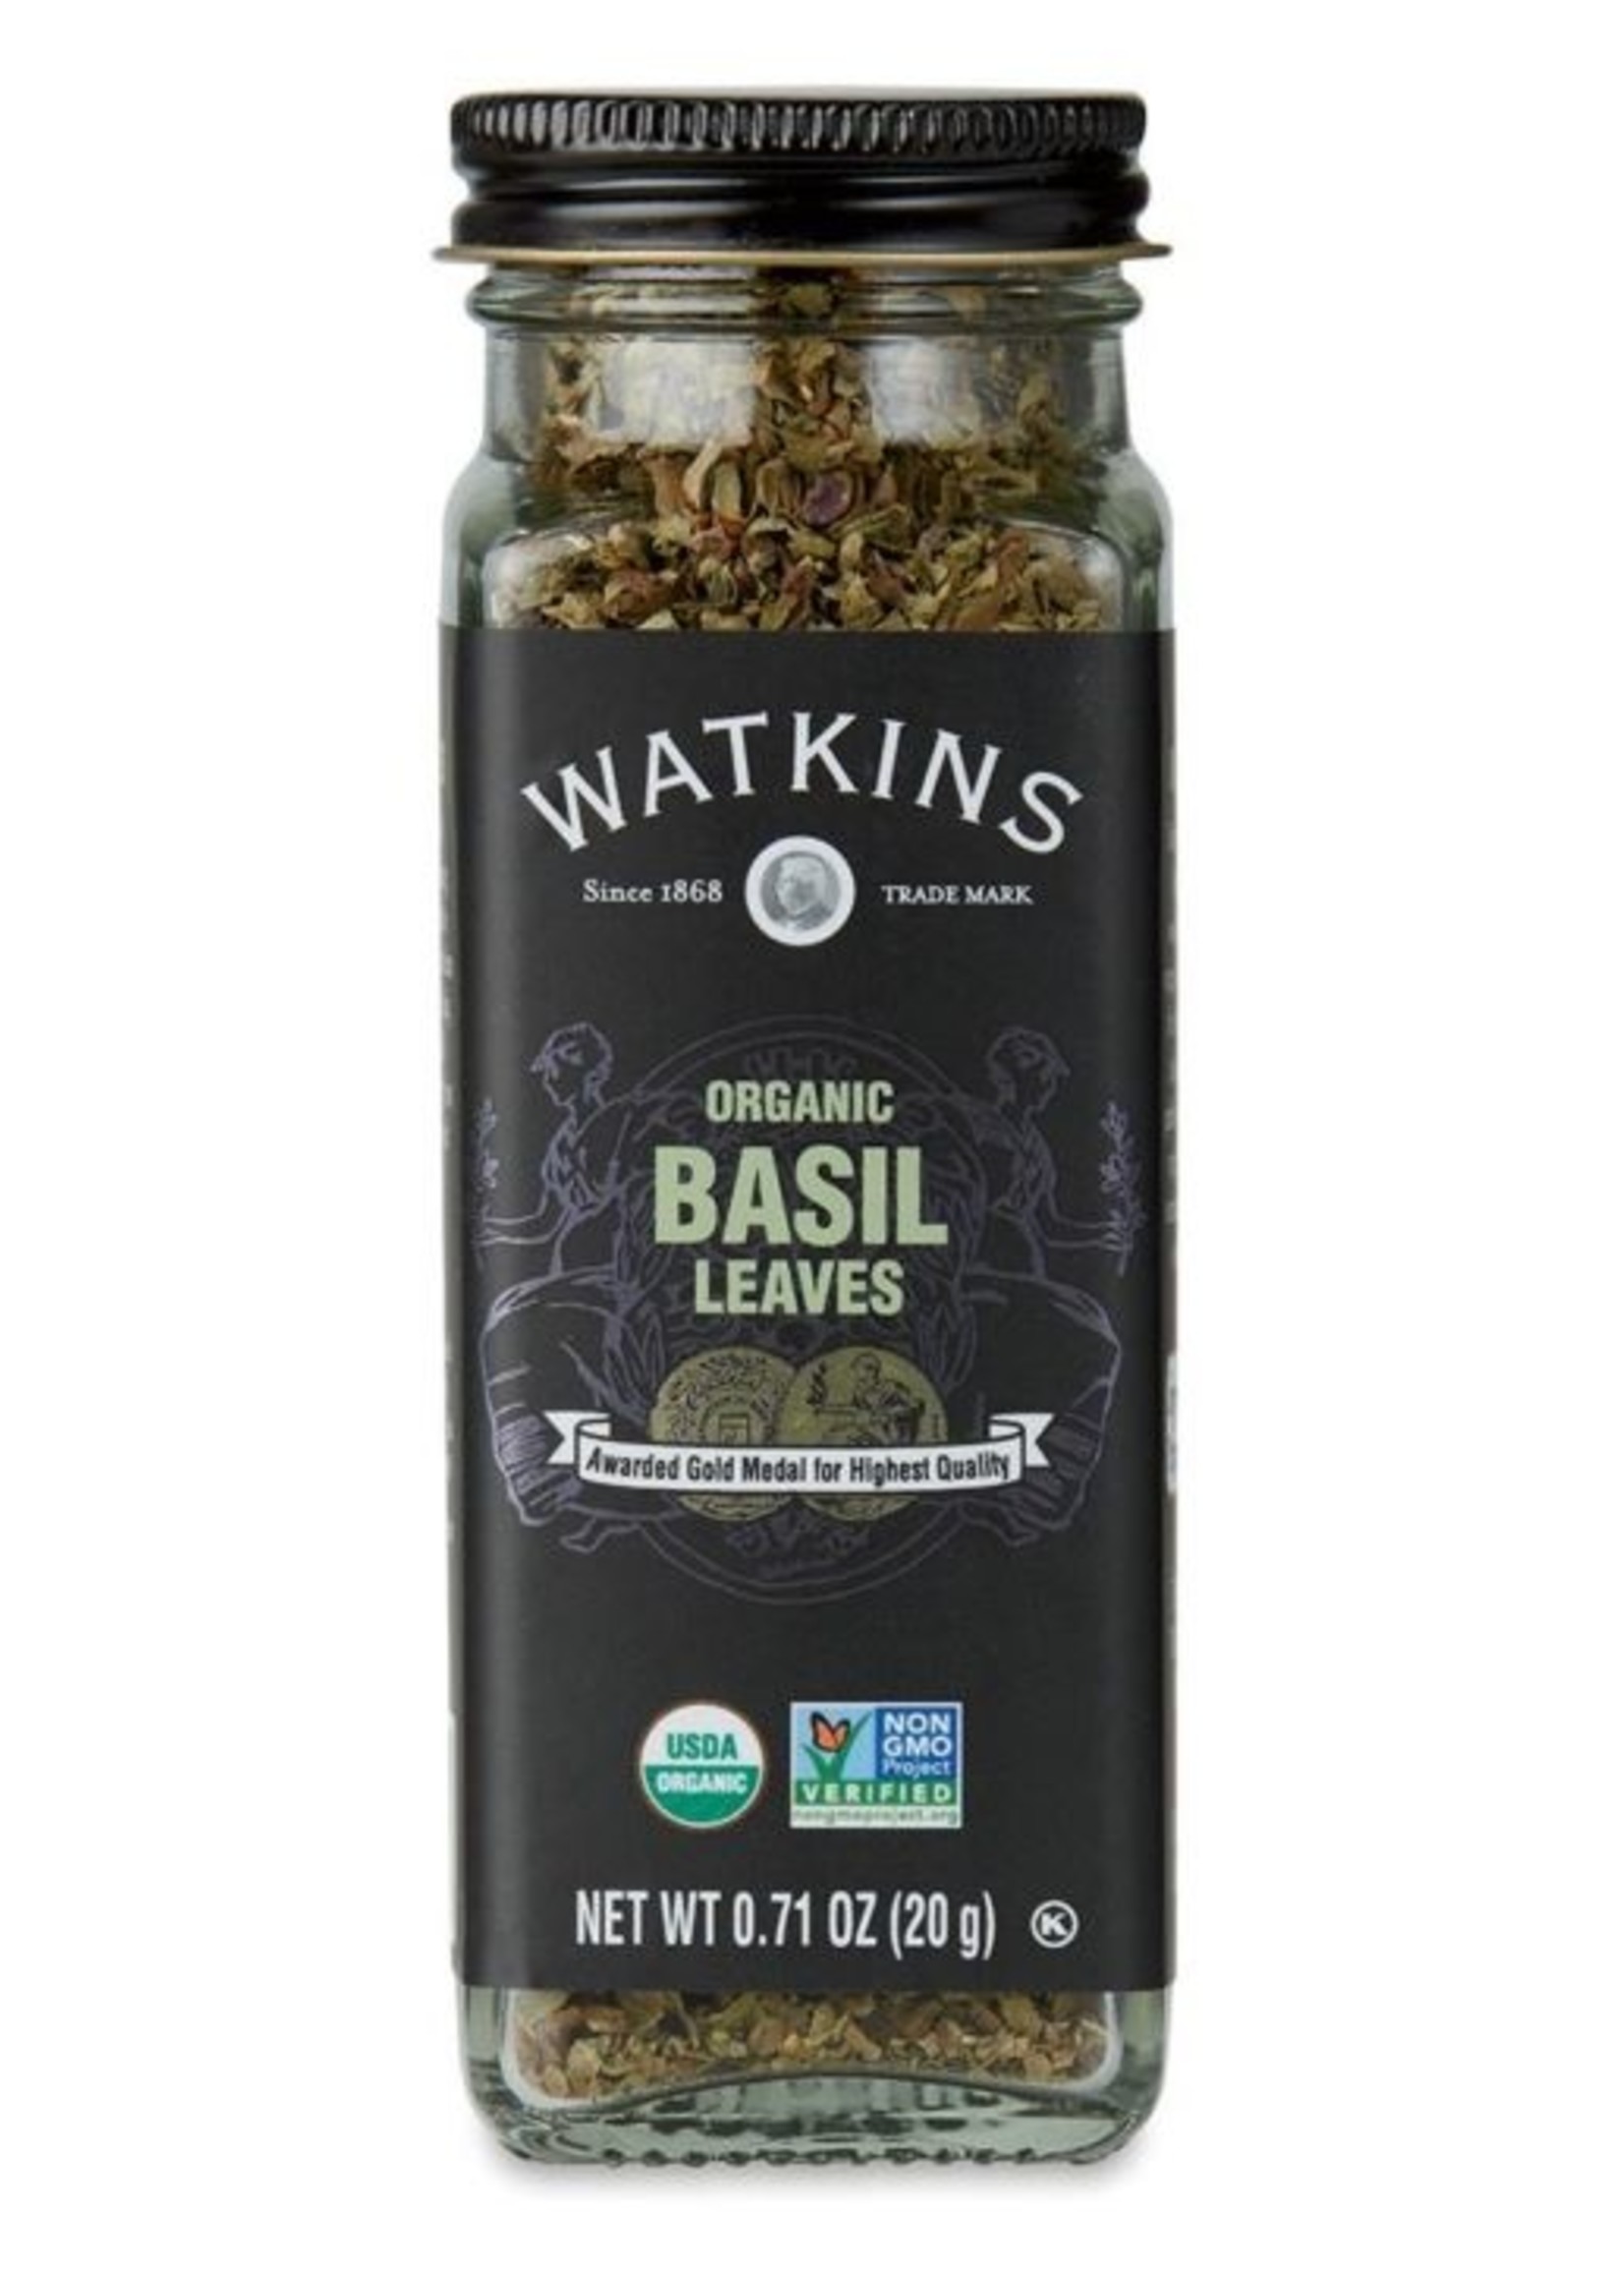 The Watkins Co. Watkins Organic Basil